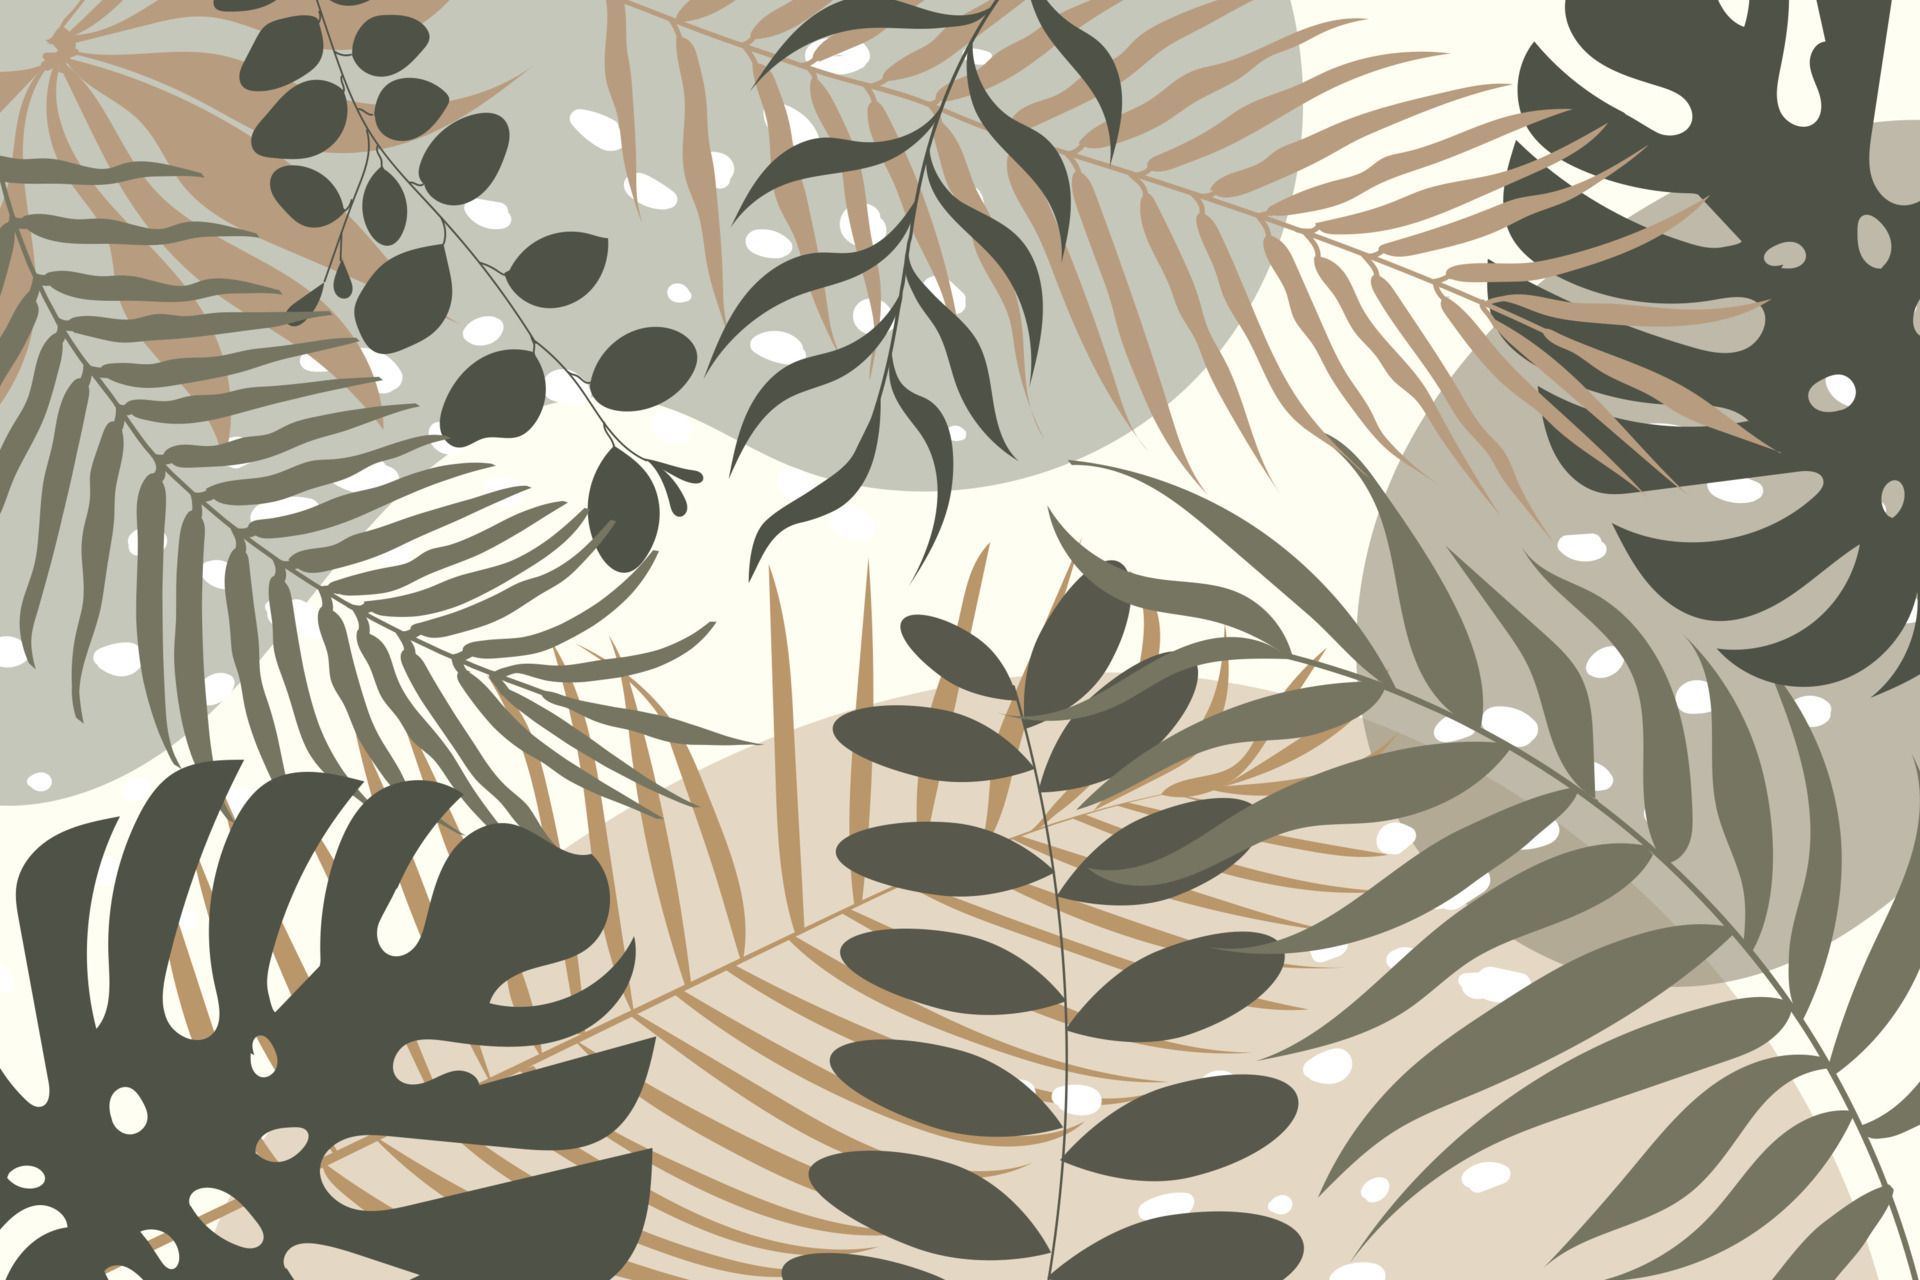  Blätter Hintergrundbild 1920x1280. abstrakte tropische blätter ästhetik hintergrund minimalistisch 6873805 Vektor Kunst bei Vecteezy